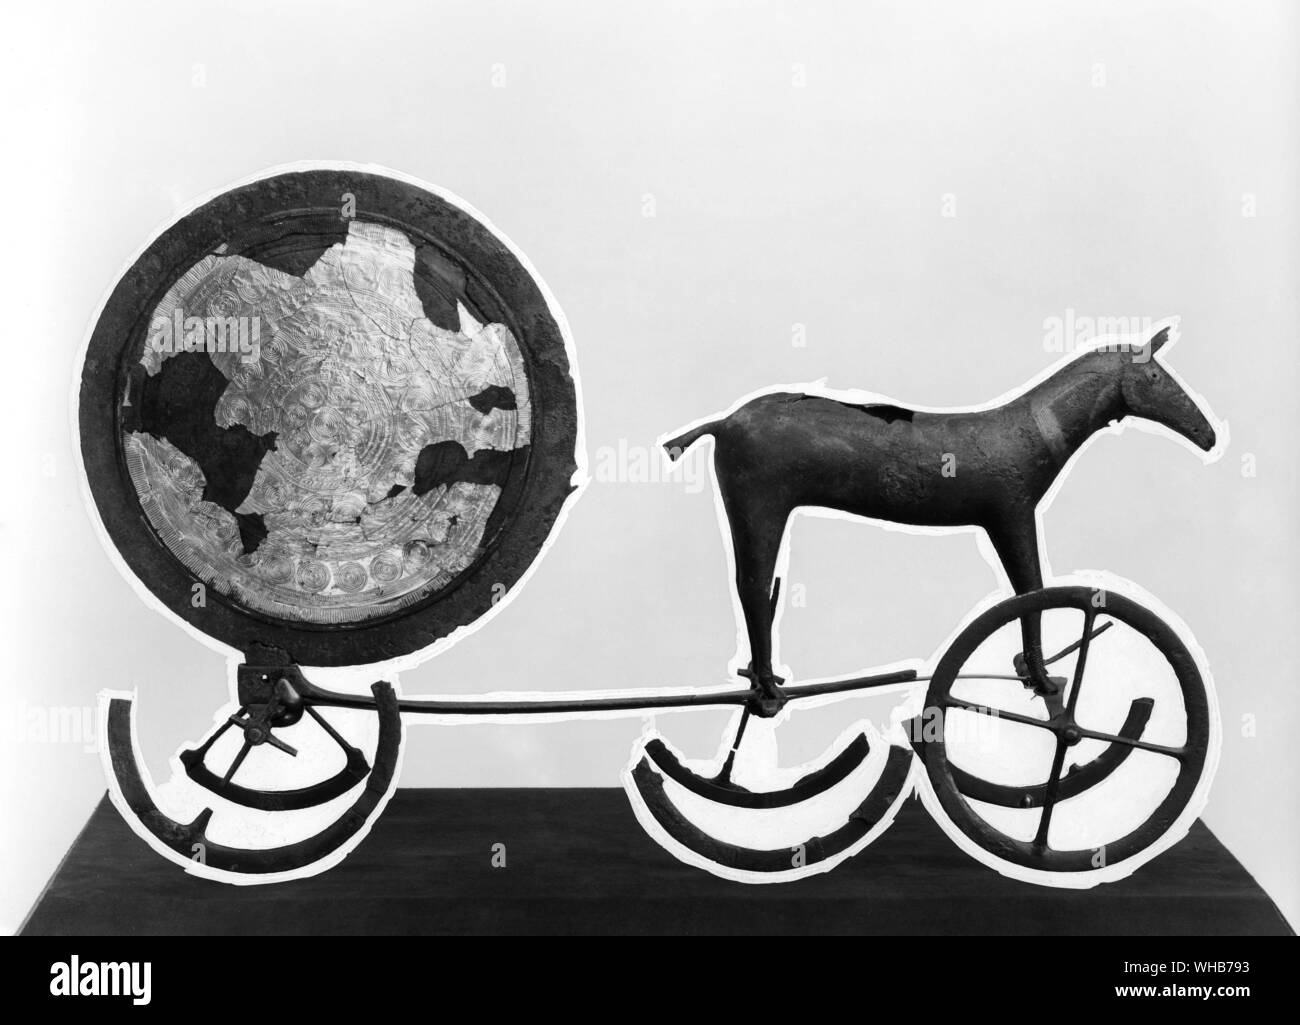 Räder und der Sonne. Symbole und Realität der Hochsommer Feuer Feste sind in der prähistorischen zeremoniellen Wagen von Trundholm Dänemark kombiniert Stockfoto